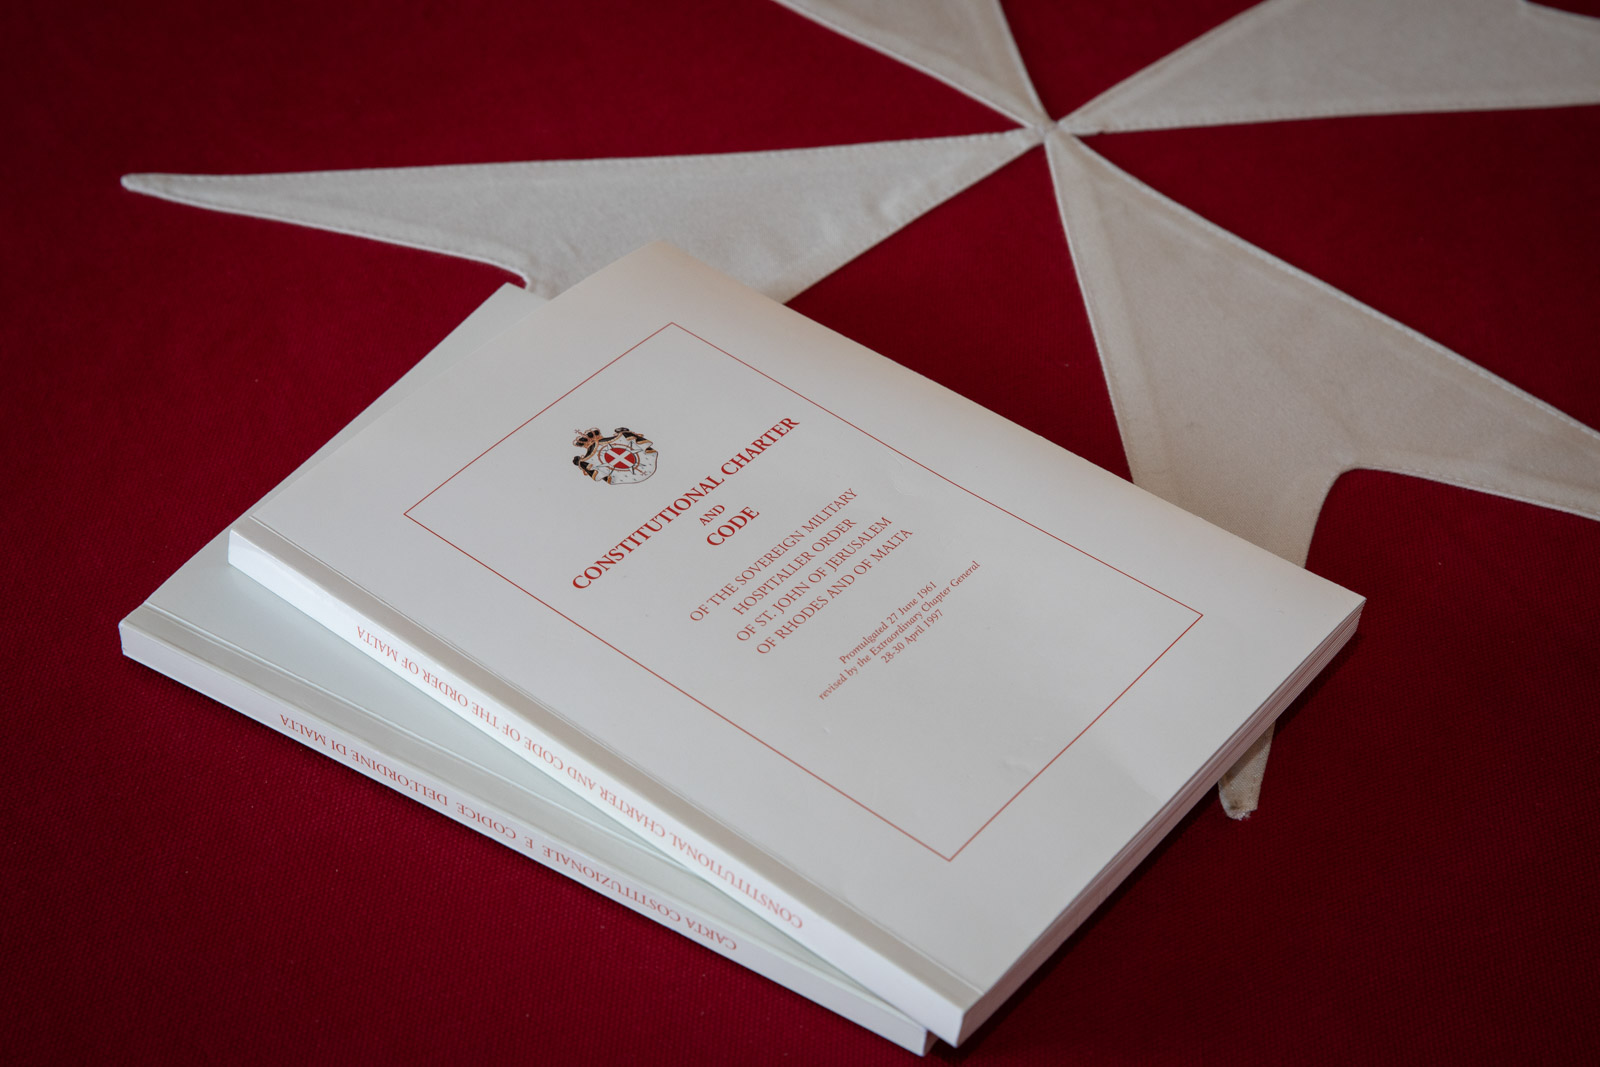 La nouvelle Constitution de l’Ordre de Malte